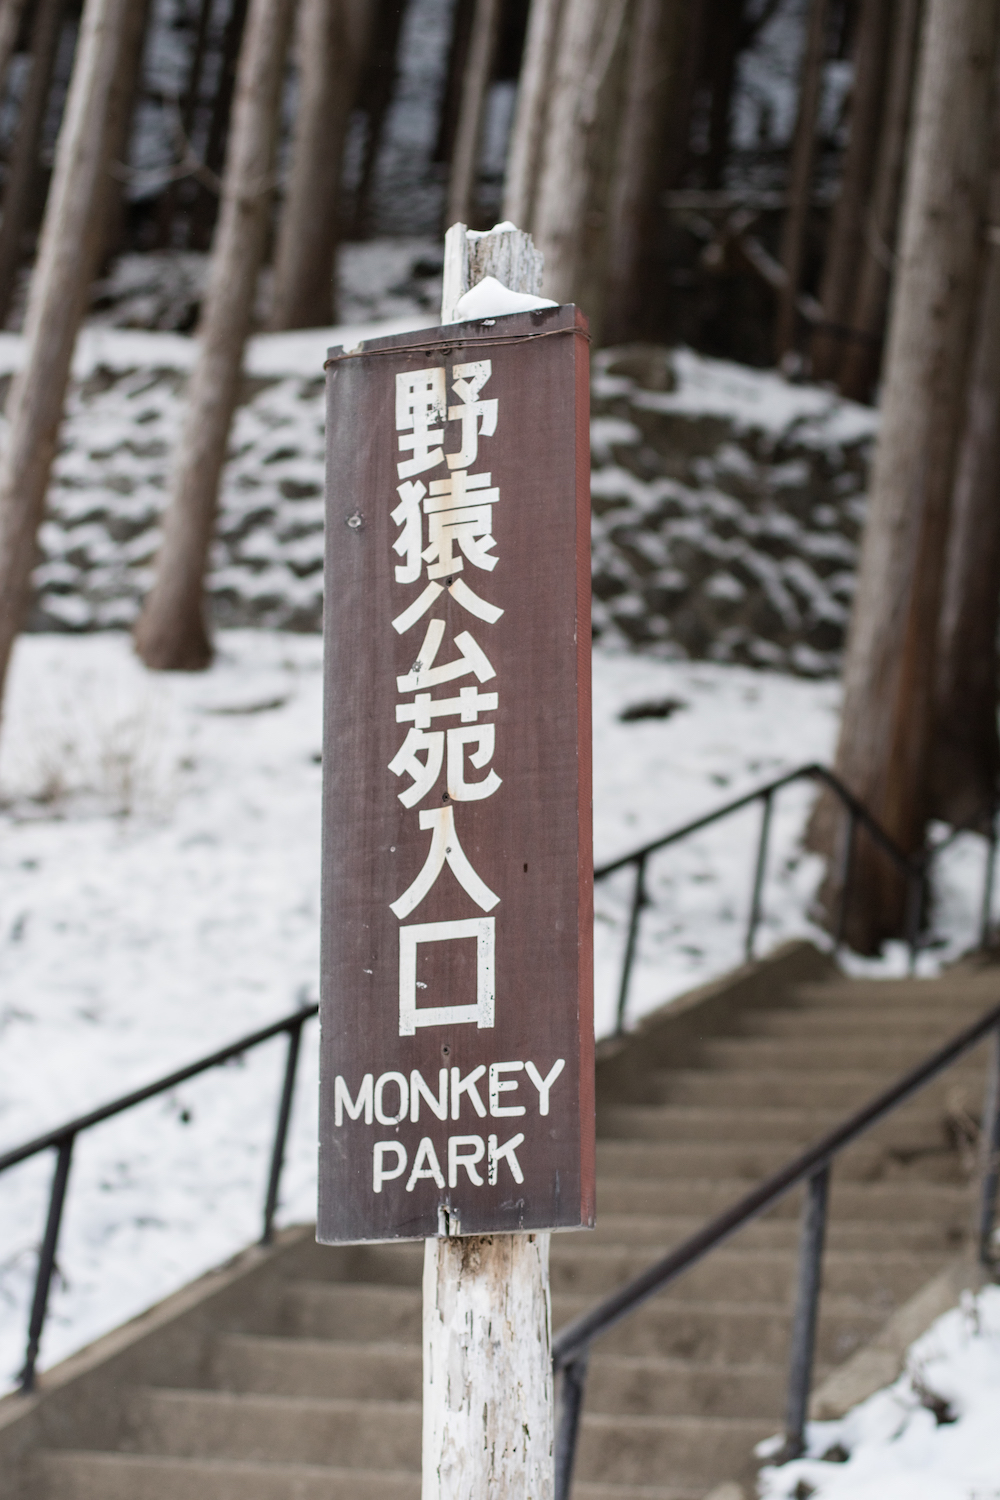 monkey-park